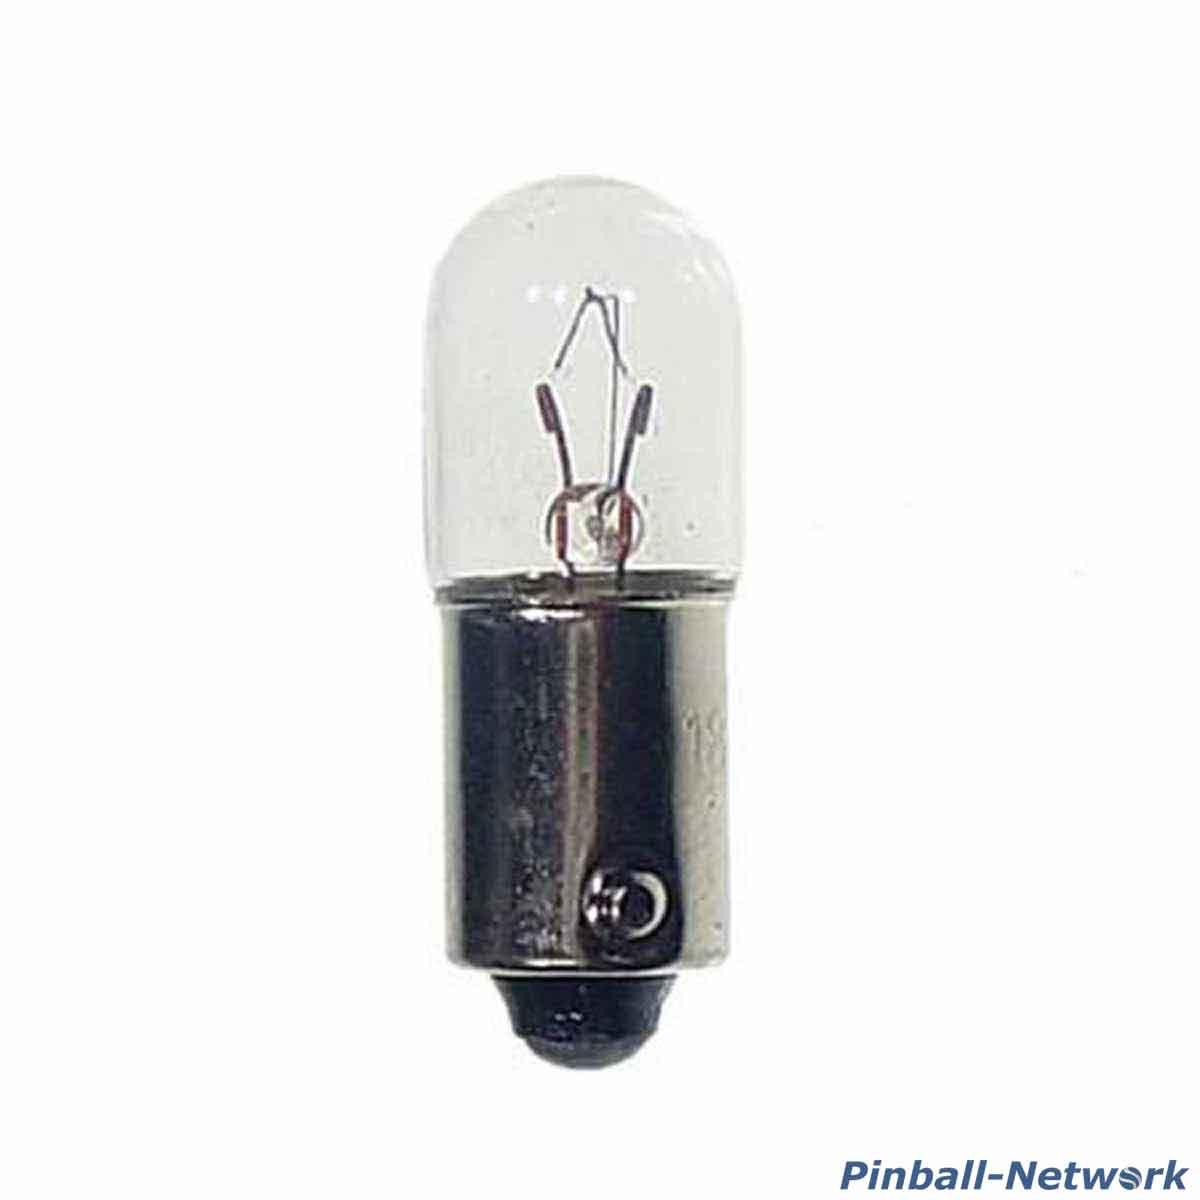 #47 Flipperlampe mit Bajonettsockel